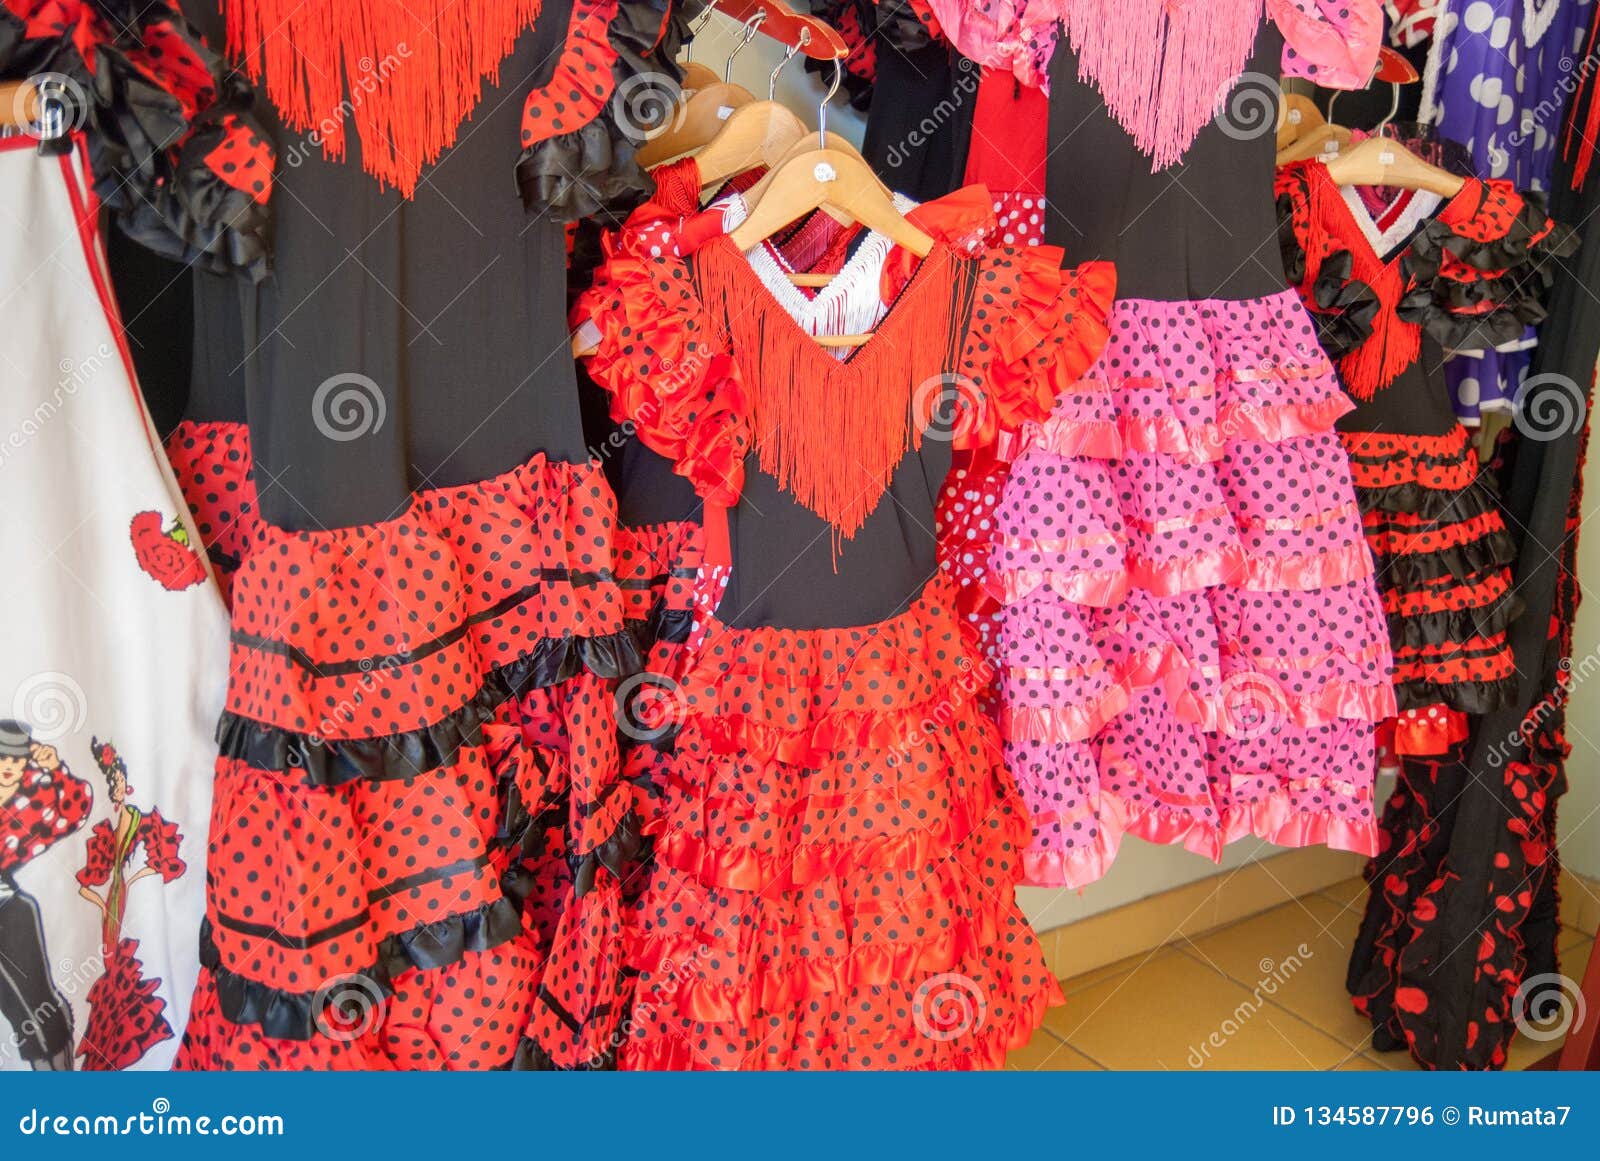 the flamenco shop